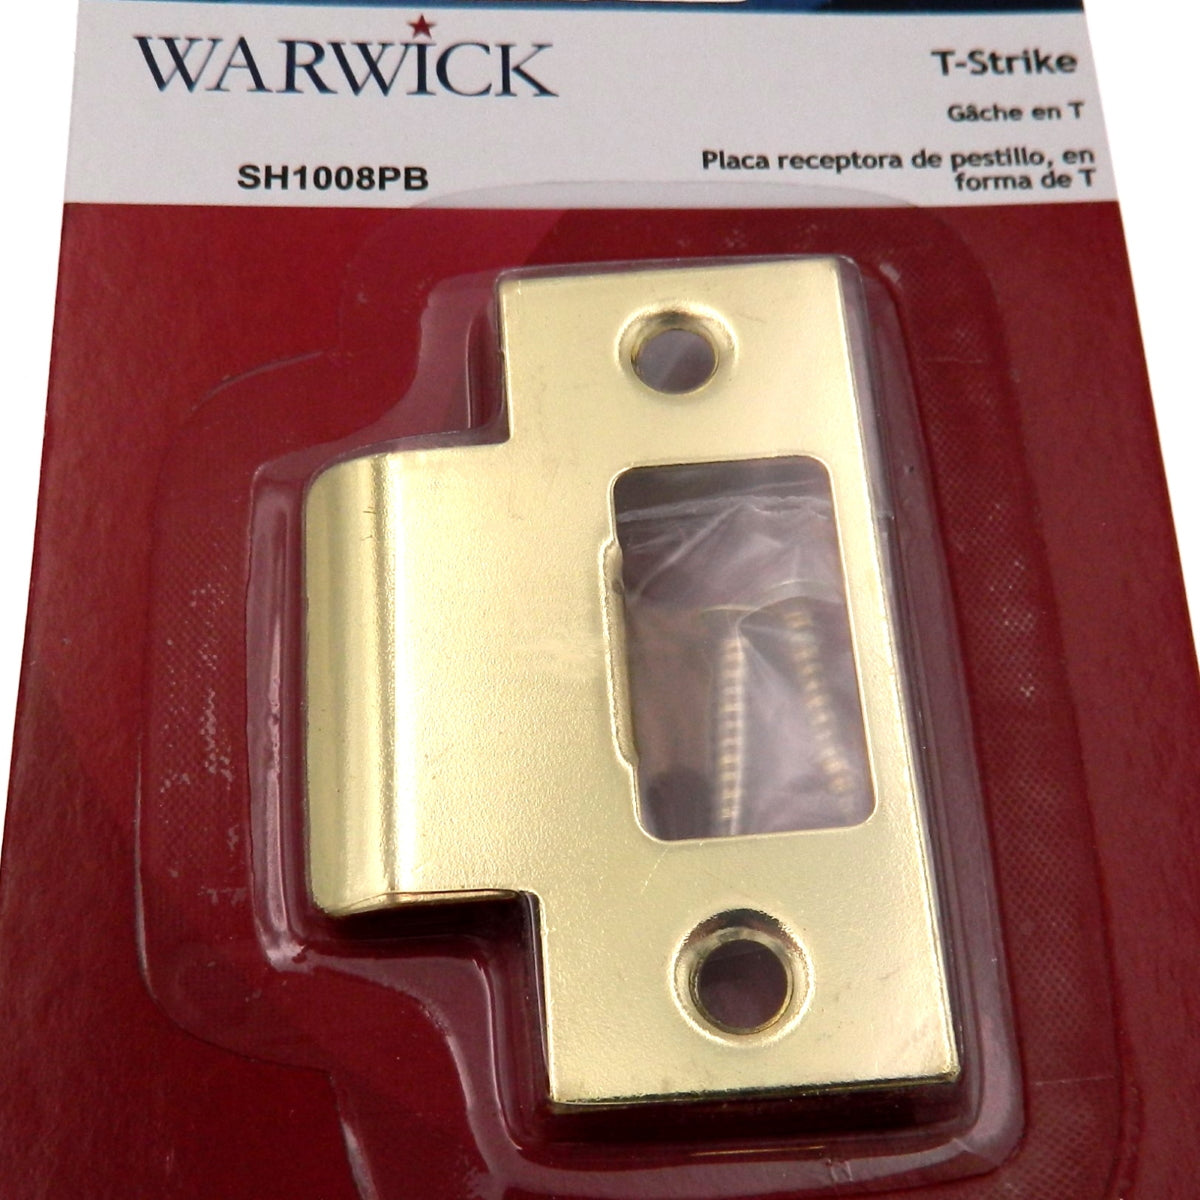 Reemplazo de placa de cierre en "T" resistente para puerta Warwick, latón pulido SH1008PB